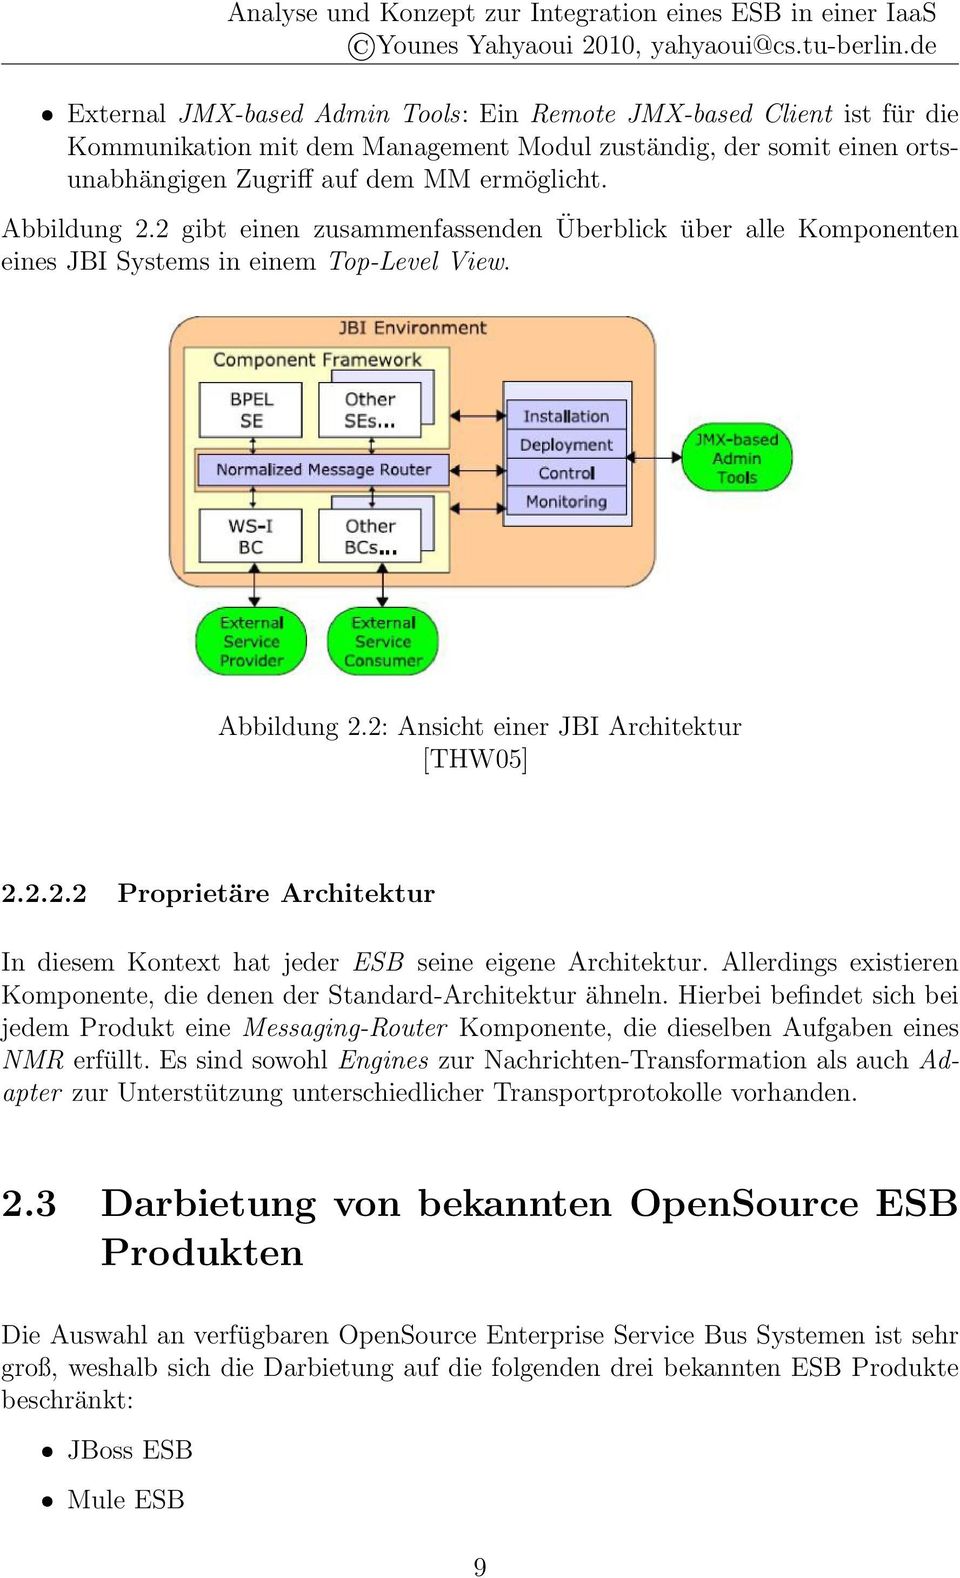 Abbildung 2.2 gibt einen zusammenfassenden Überblick über alle Komponenten eines JBI Systems in einem Top-Level View. Abbildung 2.2: Ansicht einer JBI Architektur [THW05] 2.2.2.2 Proprietäre Architektur In diesem Kontext hat jeder ESB seine eigene Architektur.